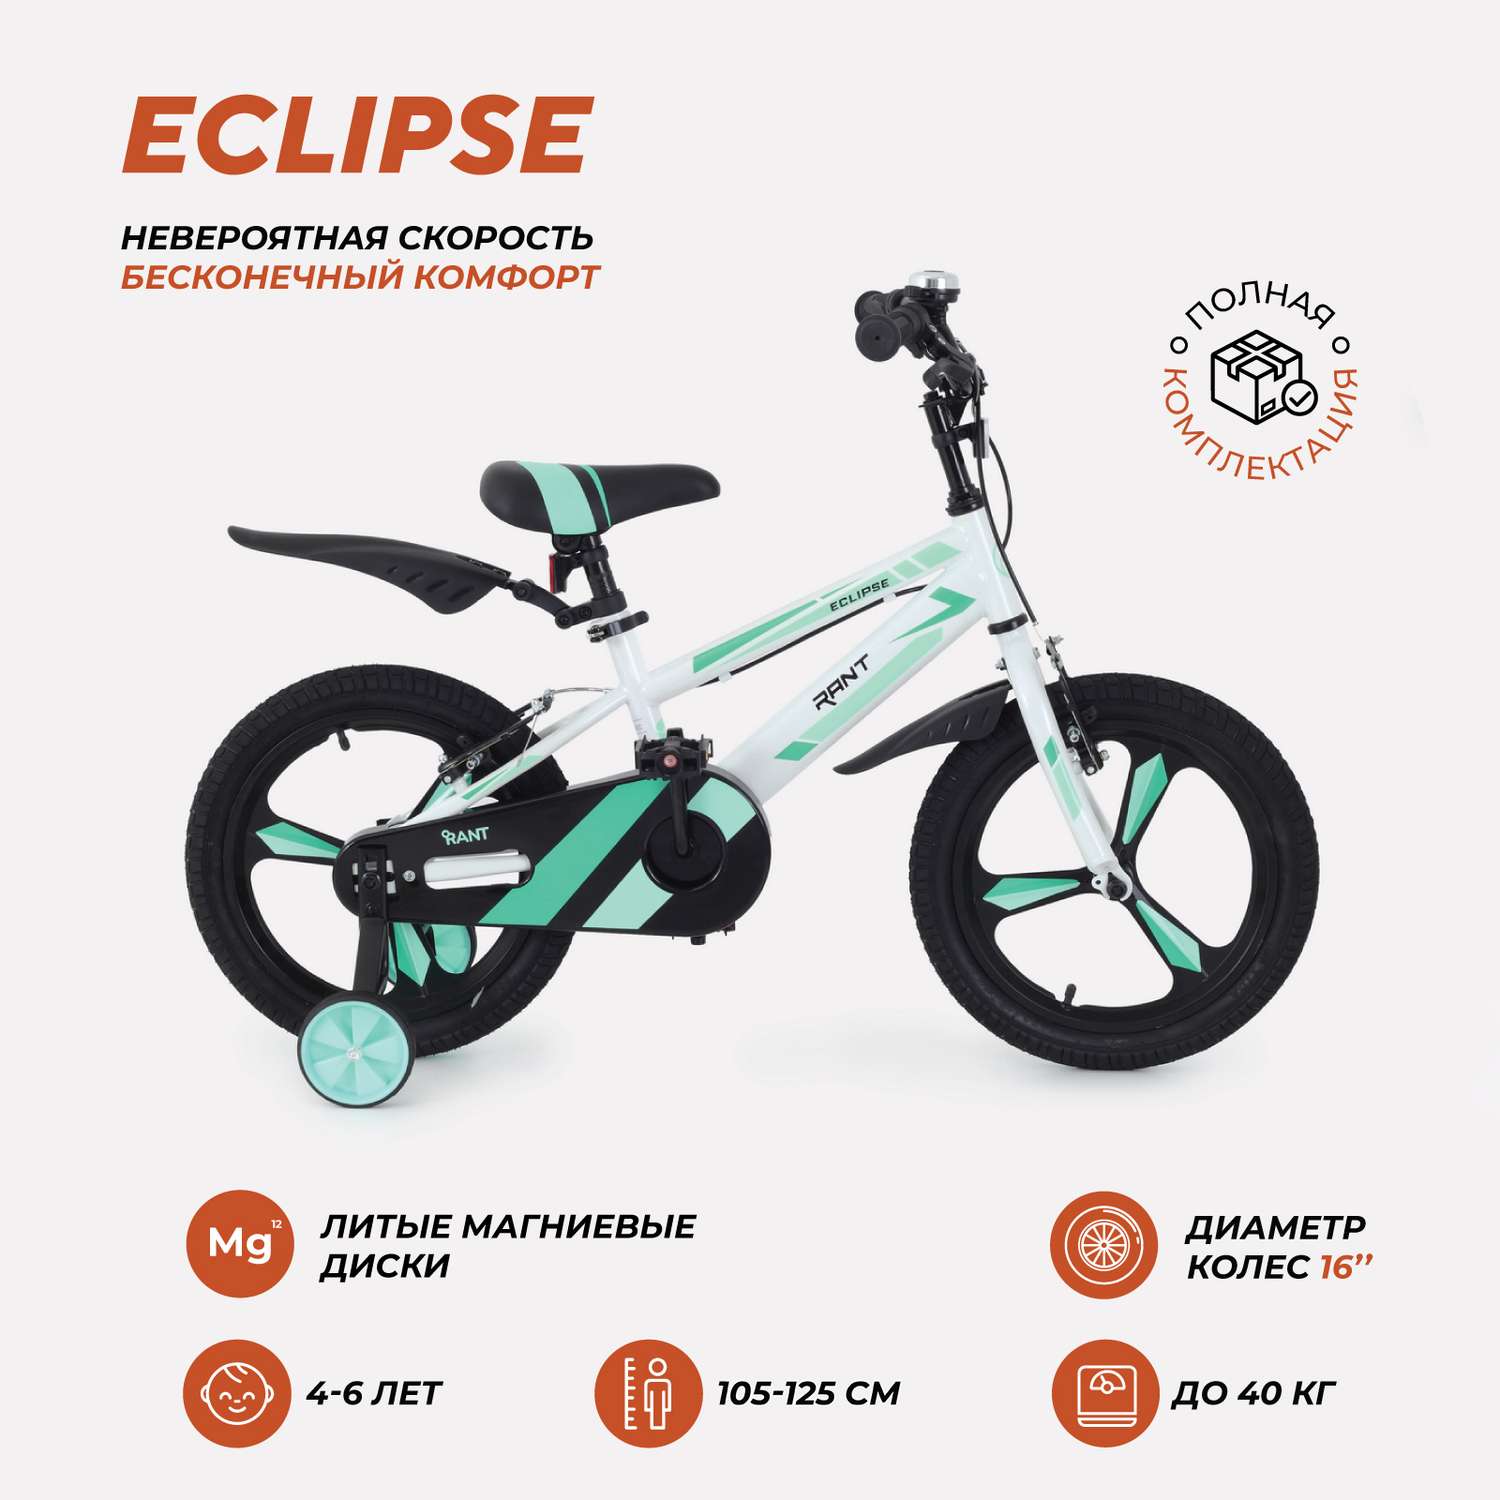 Велосипед 2-х колесный детский Rant Eclipse белый 16 - фото 1